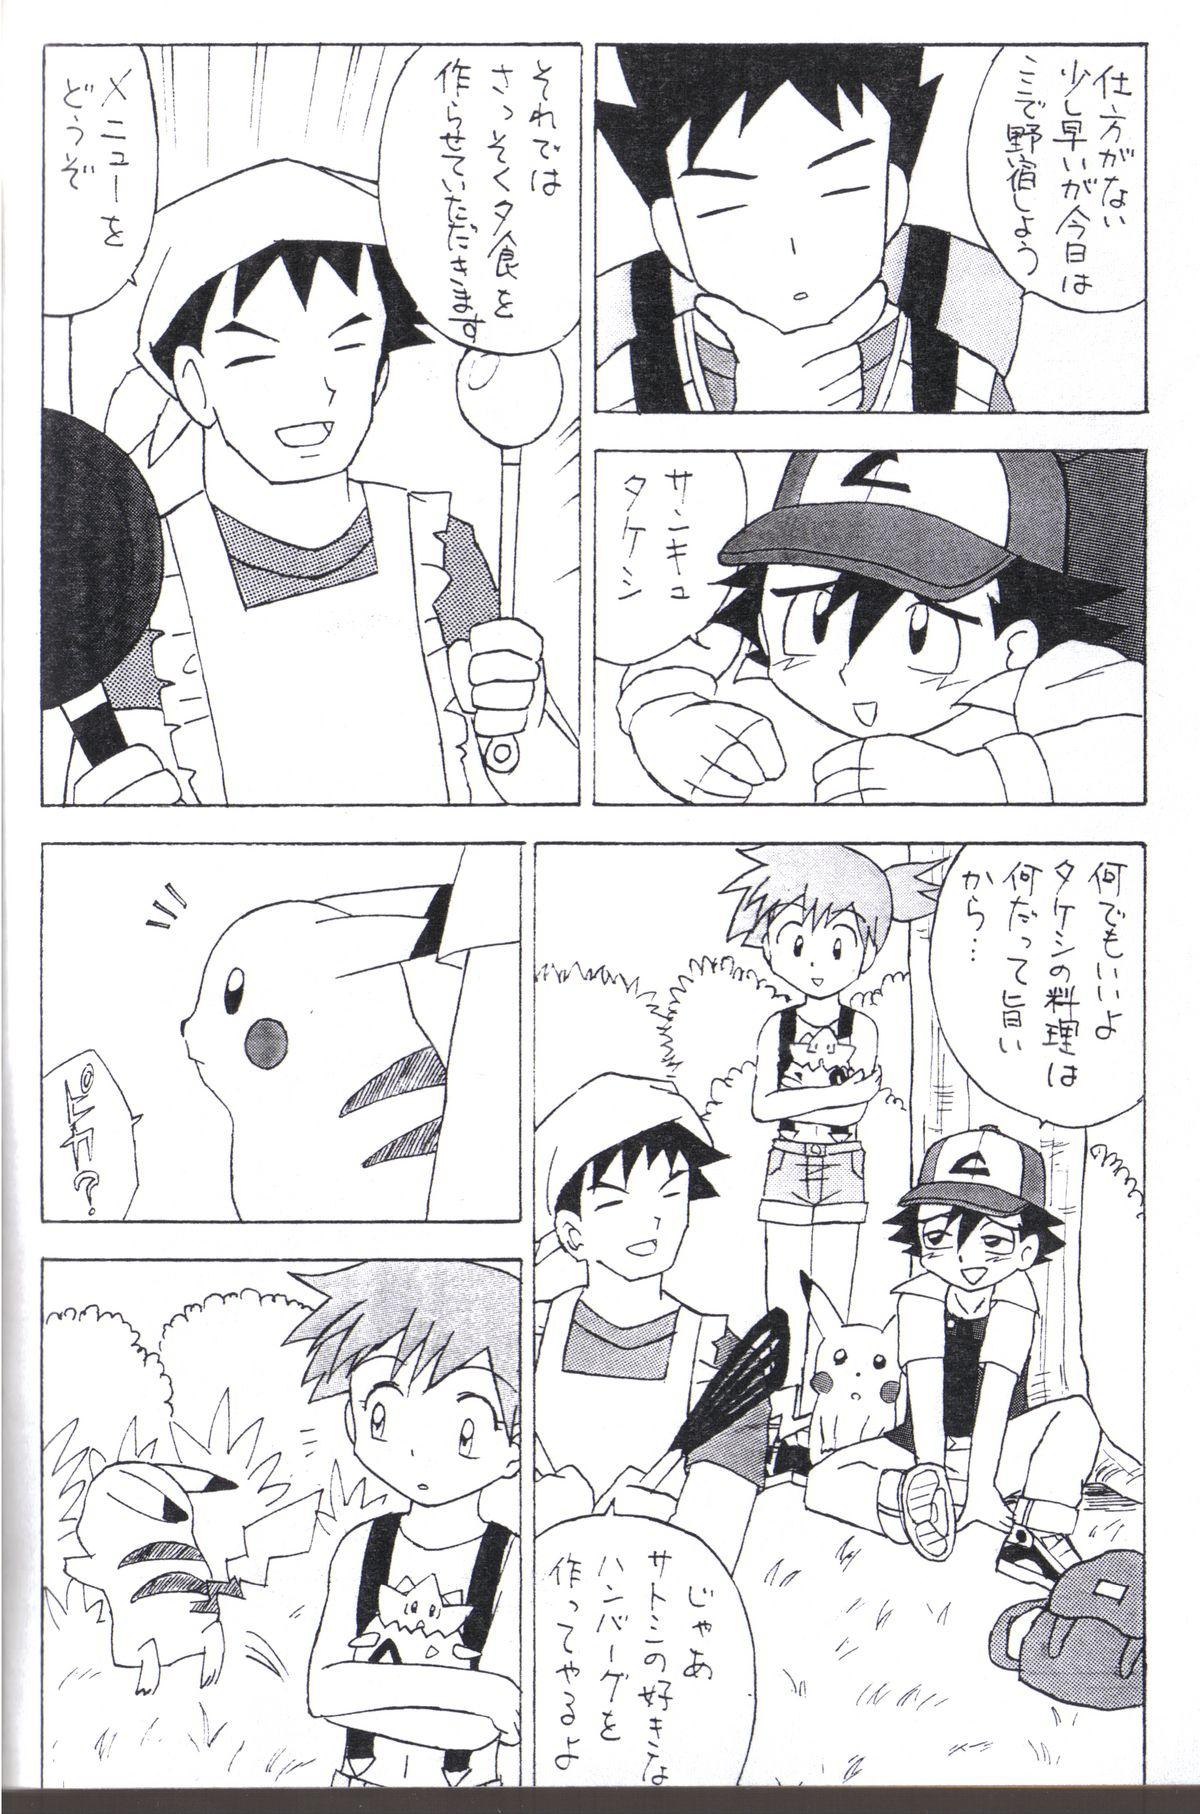 Cuzinho Kasumi no Sora - Pokemon Porno 18 - Page 5